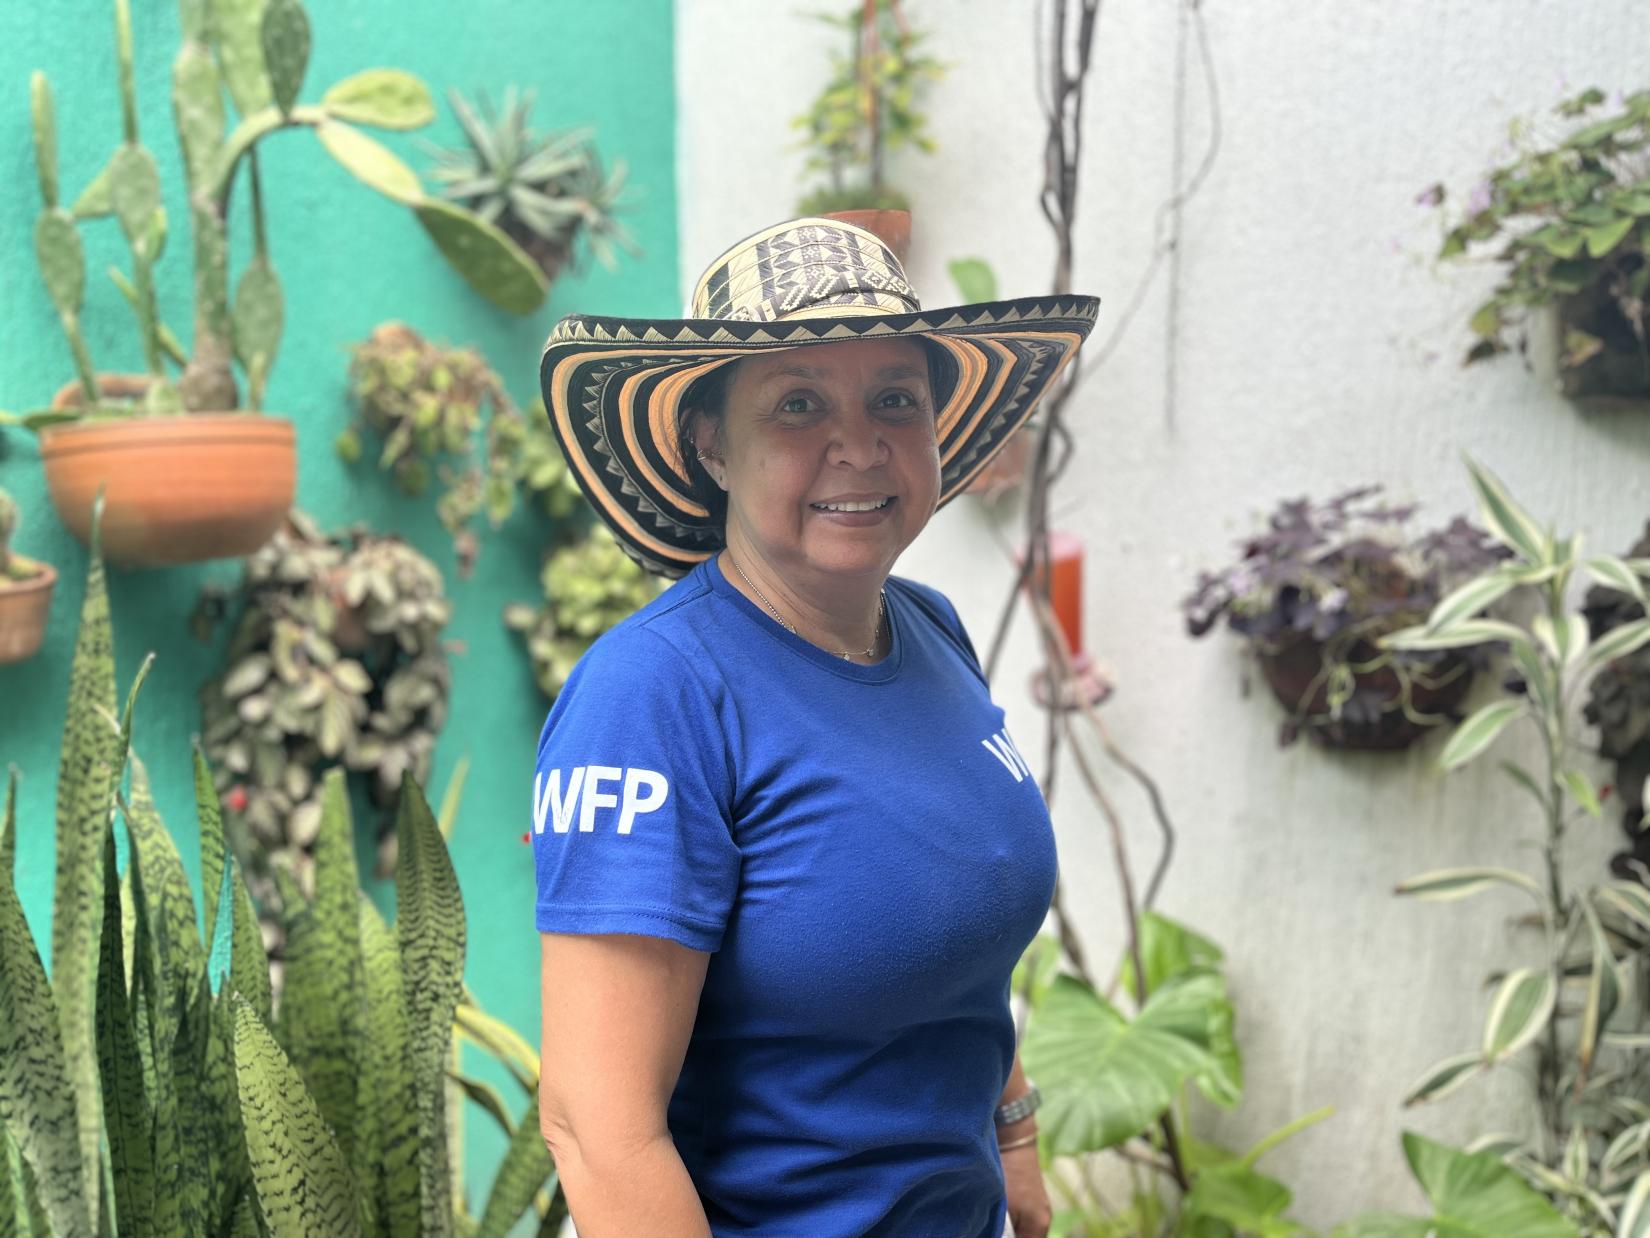 Claudia Pineda, Jefe de la Oficina de Terreno de WFP en Montería, municipio en la región Caribe, al noroccidente de Colombia, porta su sombrero “vueltiao” de la etnia Zenú y su indumentaria con visibilidad del Programa Mundial de Alimentos. 